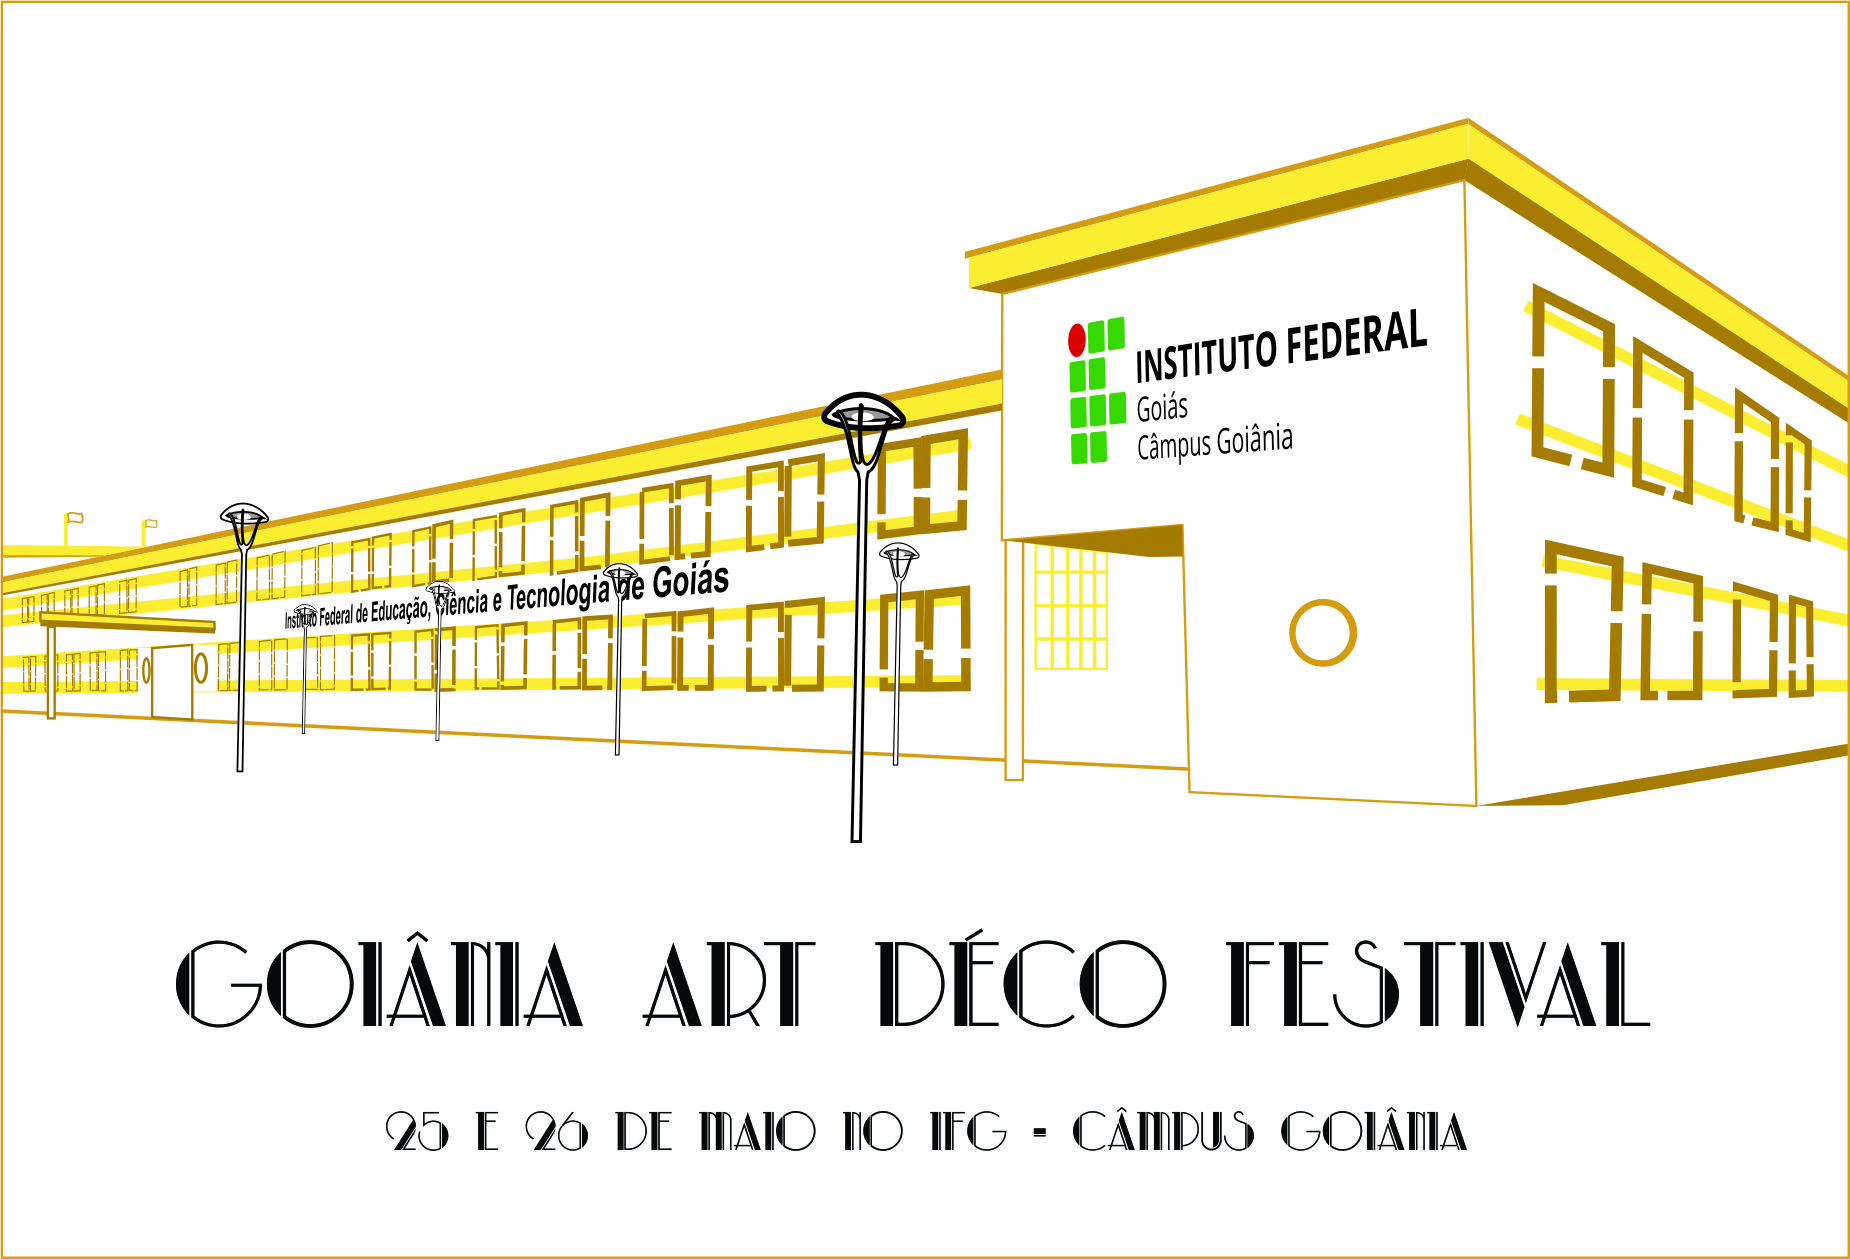 Programação do Goiânia Art Déco Festival acontece de 25 a 26 de maio, no IFG - Câmpus Goiânia.